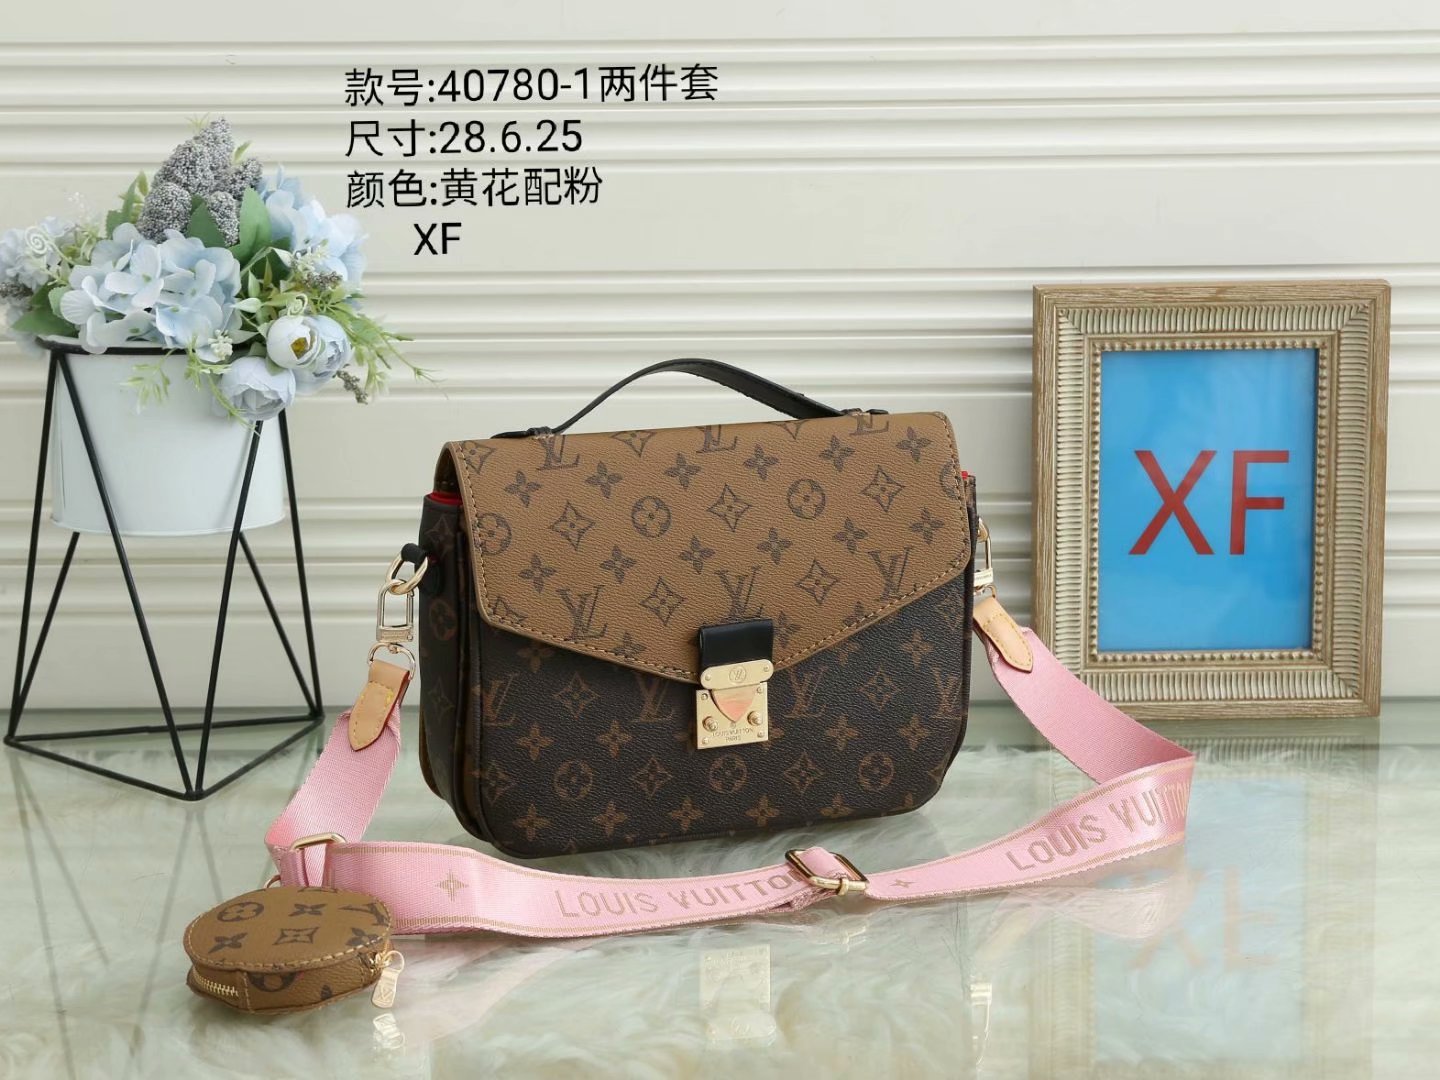 LV Louis Vuitton cheap discount two piece shopping bag Women classic fashion Shoulder Bag Handbag Wa